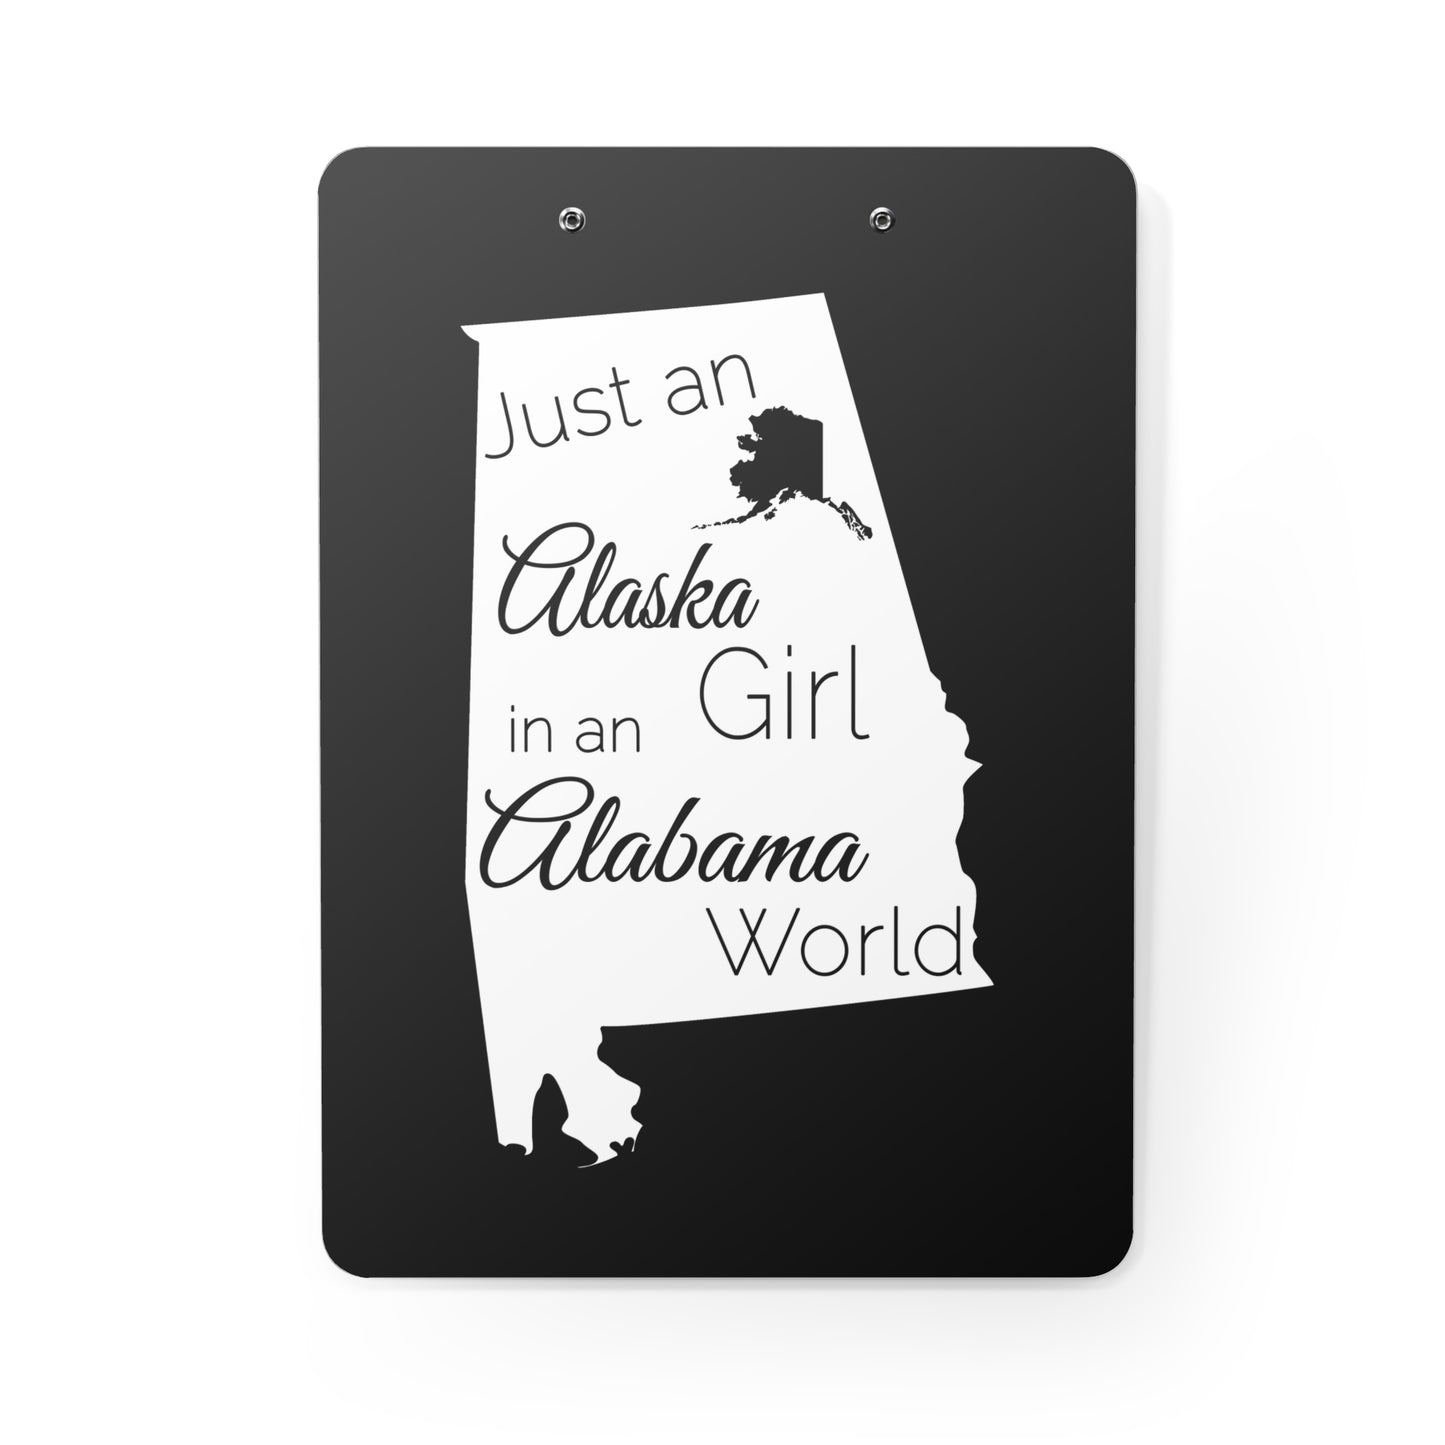 Just an Alaska Girl in an Alabama World Clipboard